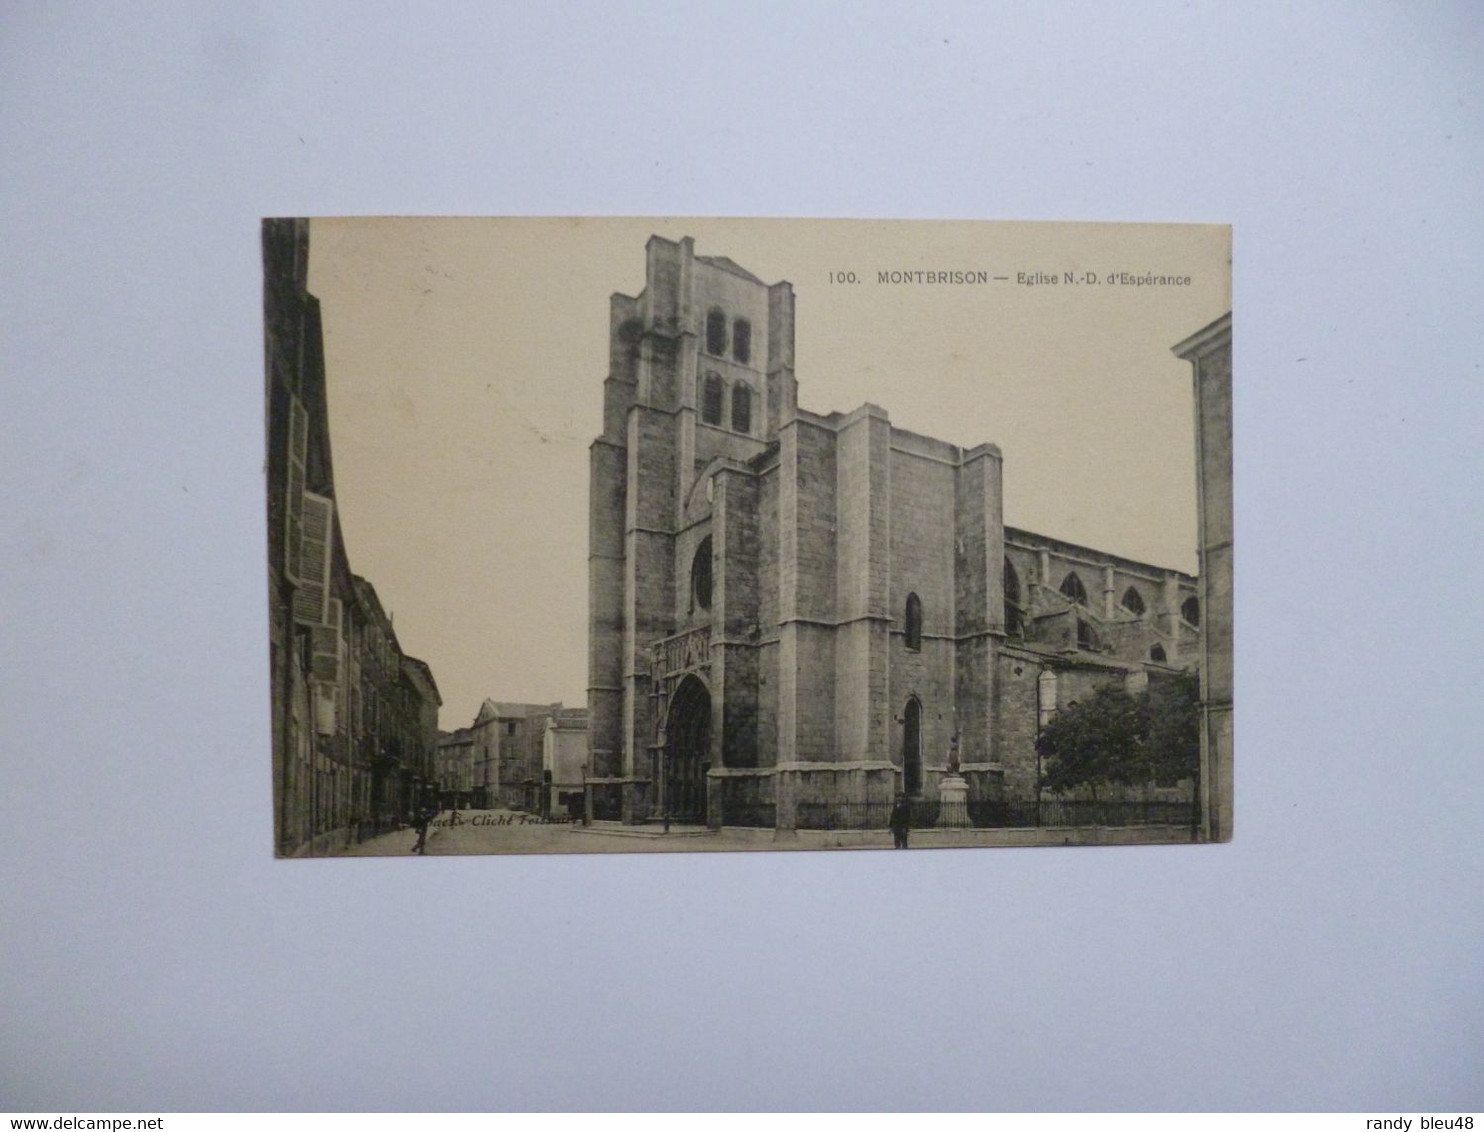 MONTBRISON  -  42  -  Eglise Notre Dame D'espérance  -  LOIRE - Montbrison